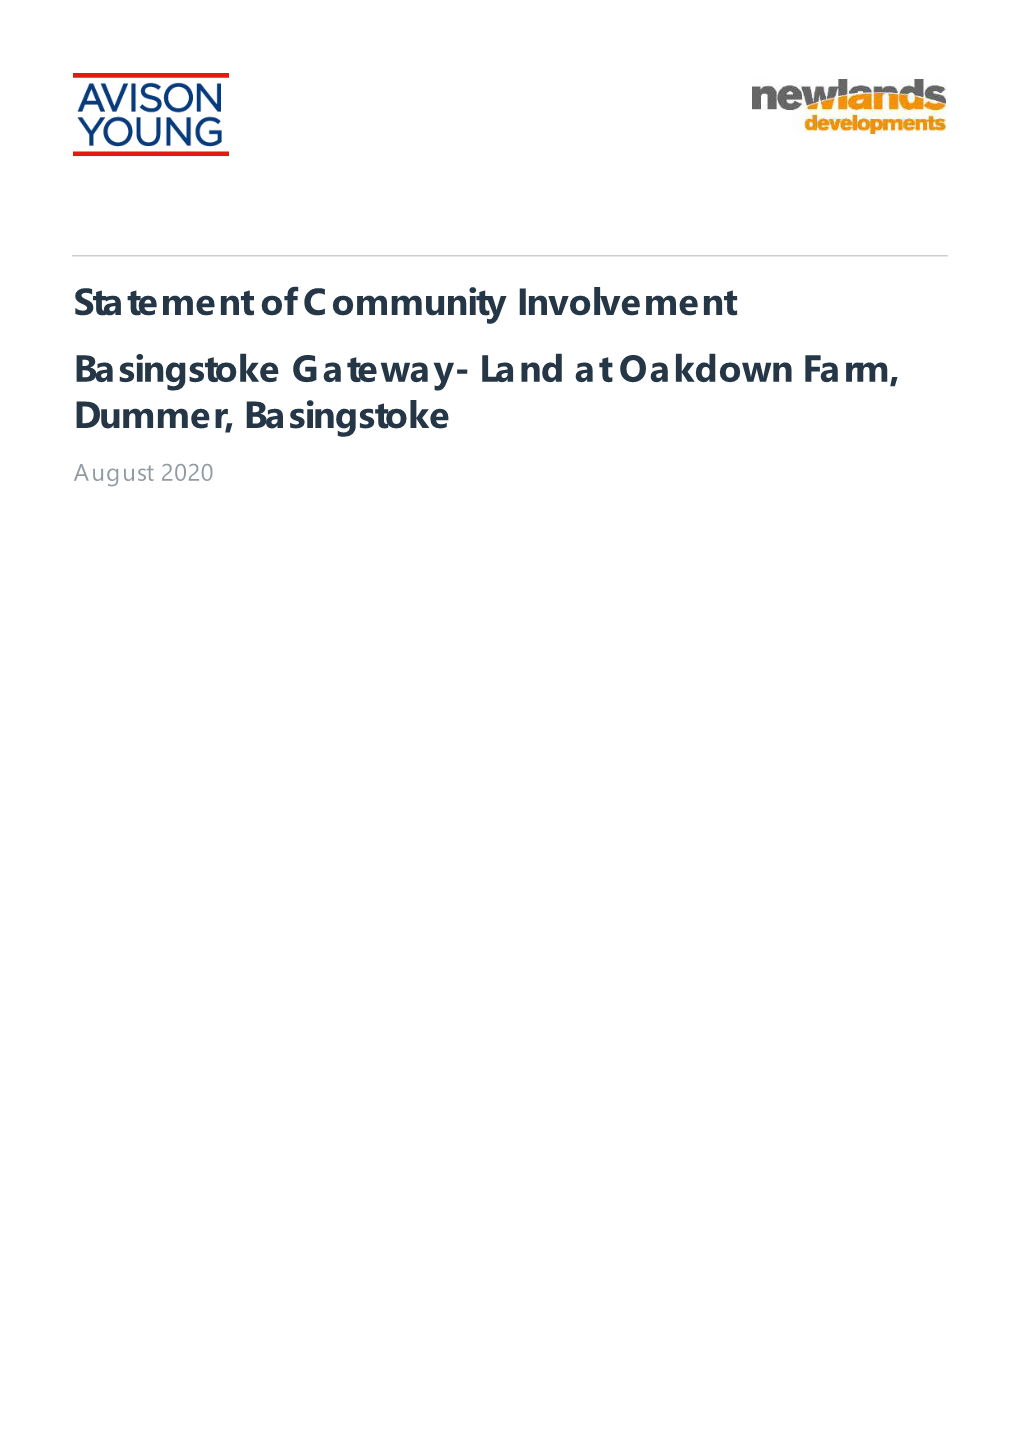 Land at Oakdown Farm, Dummer, Basingstoke